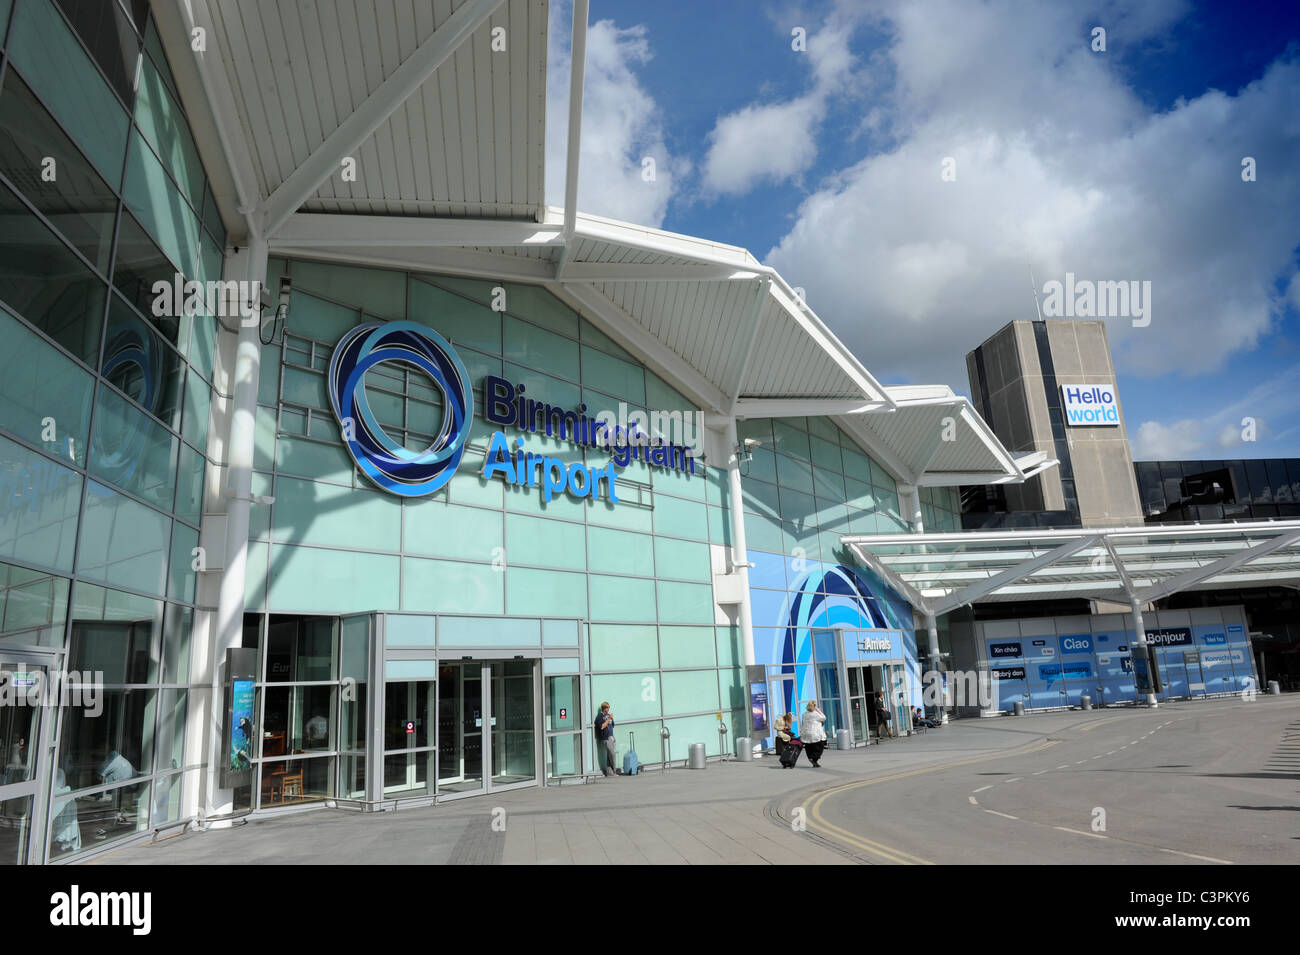 Birmingham Flughafen terminal neues Logo Zeichen England Uk Stockfoto